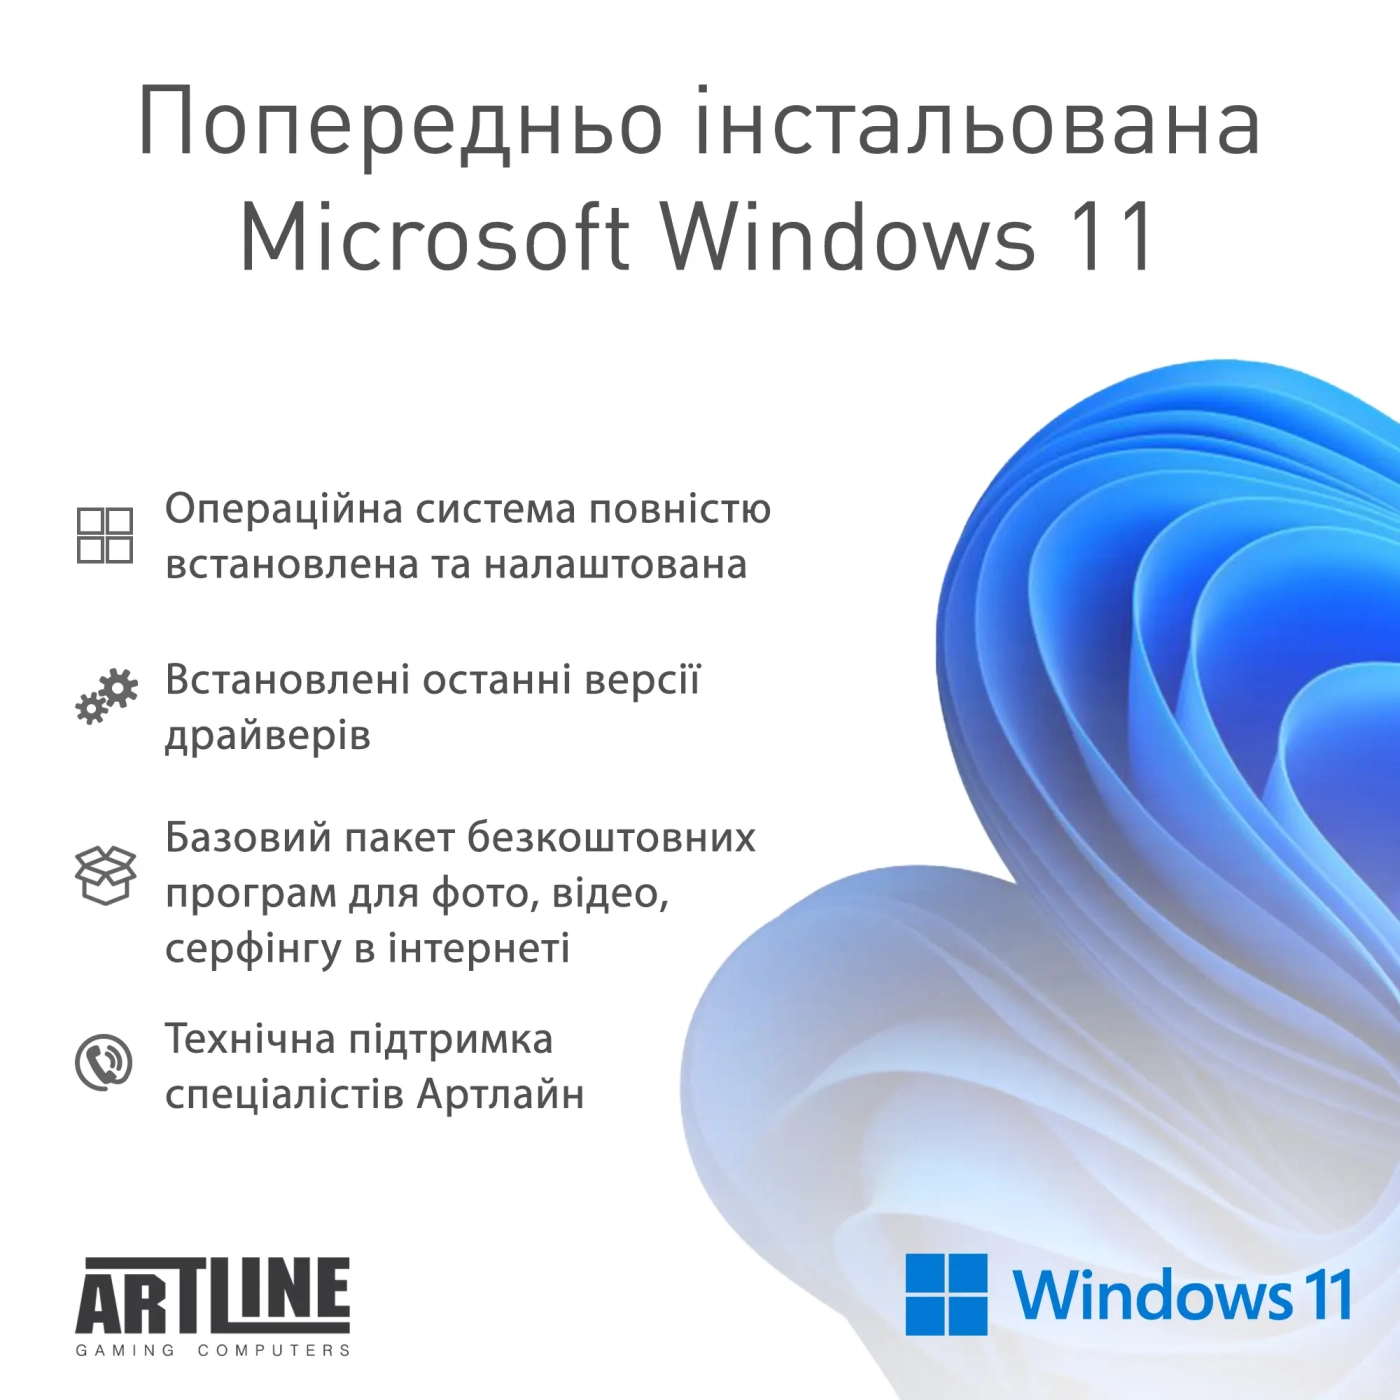 Купить Компьютер ARTLINE Gaming D31 Windows 11 Home (D31v51Win) - фото 11